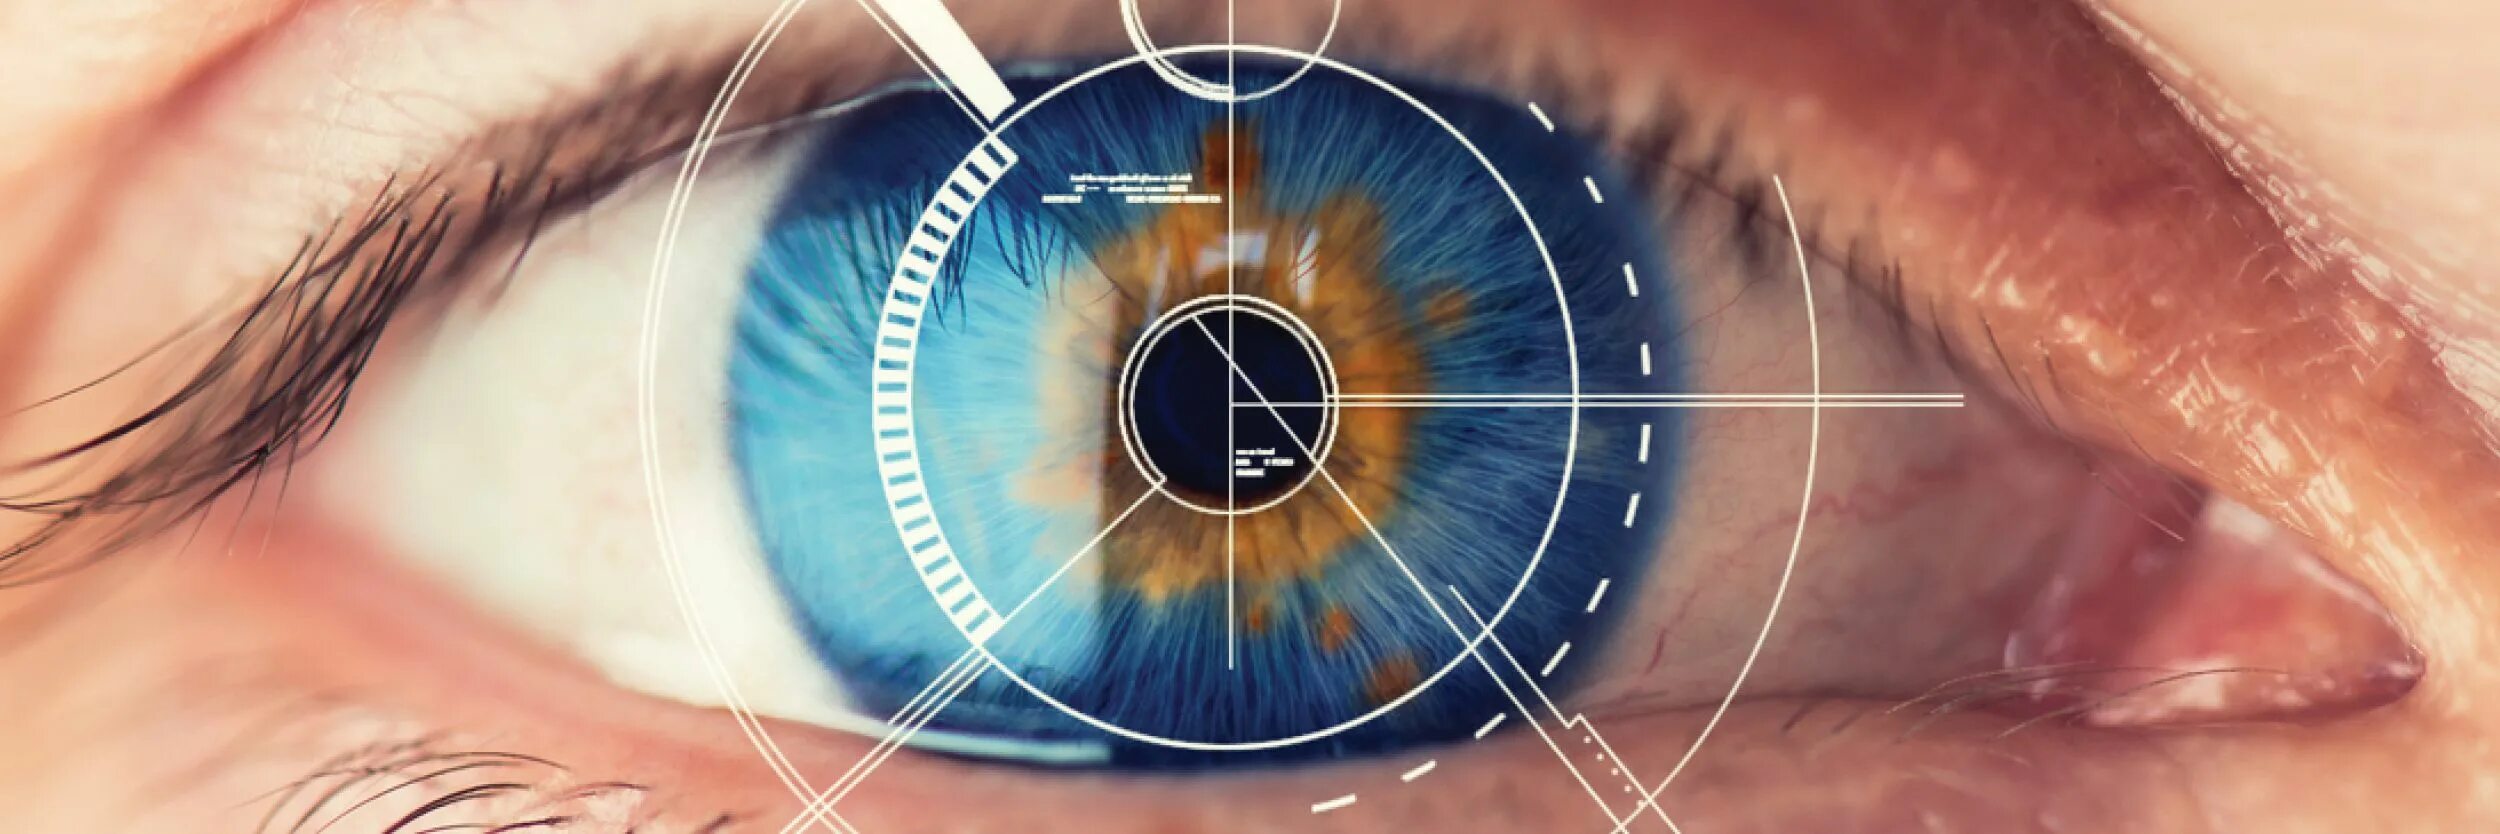 Аналитическое зрение. Сетчатка глаза биометрия. Сканер по радужной оболочке глаза. Коррекция зрения лазером.